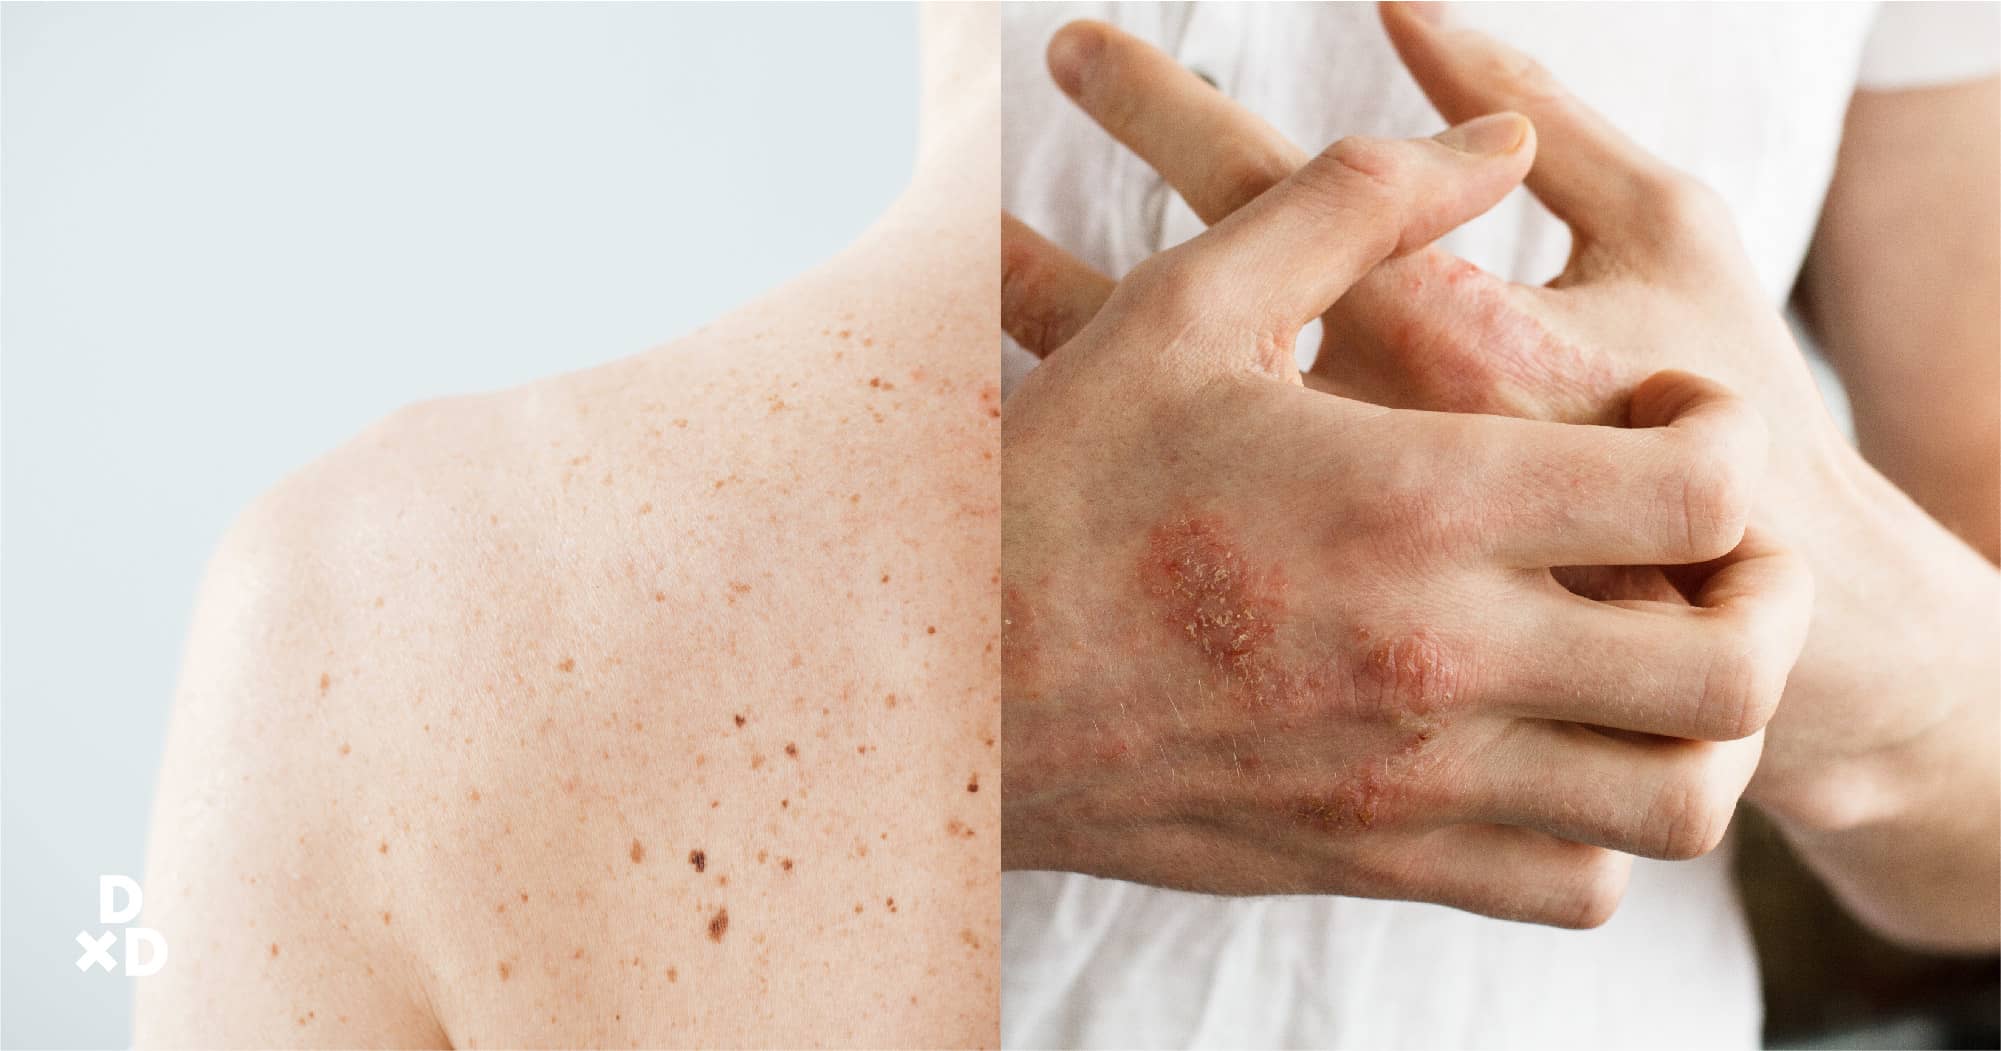 symptoms skin cancer singapore